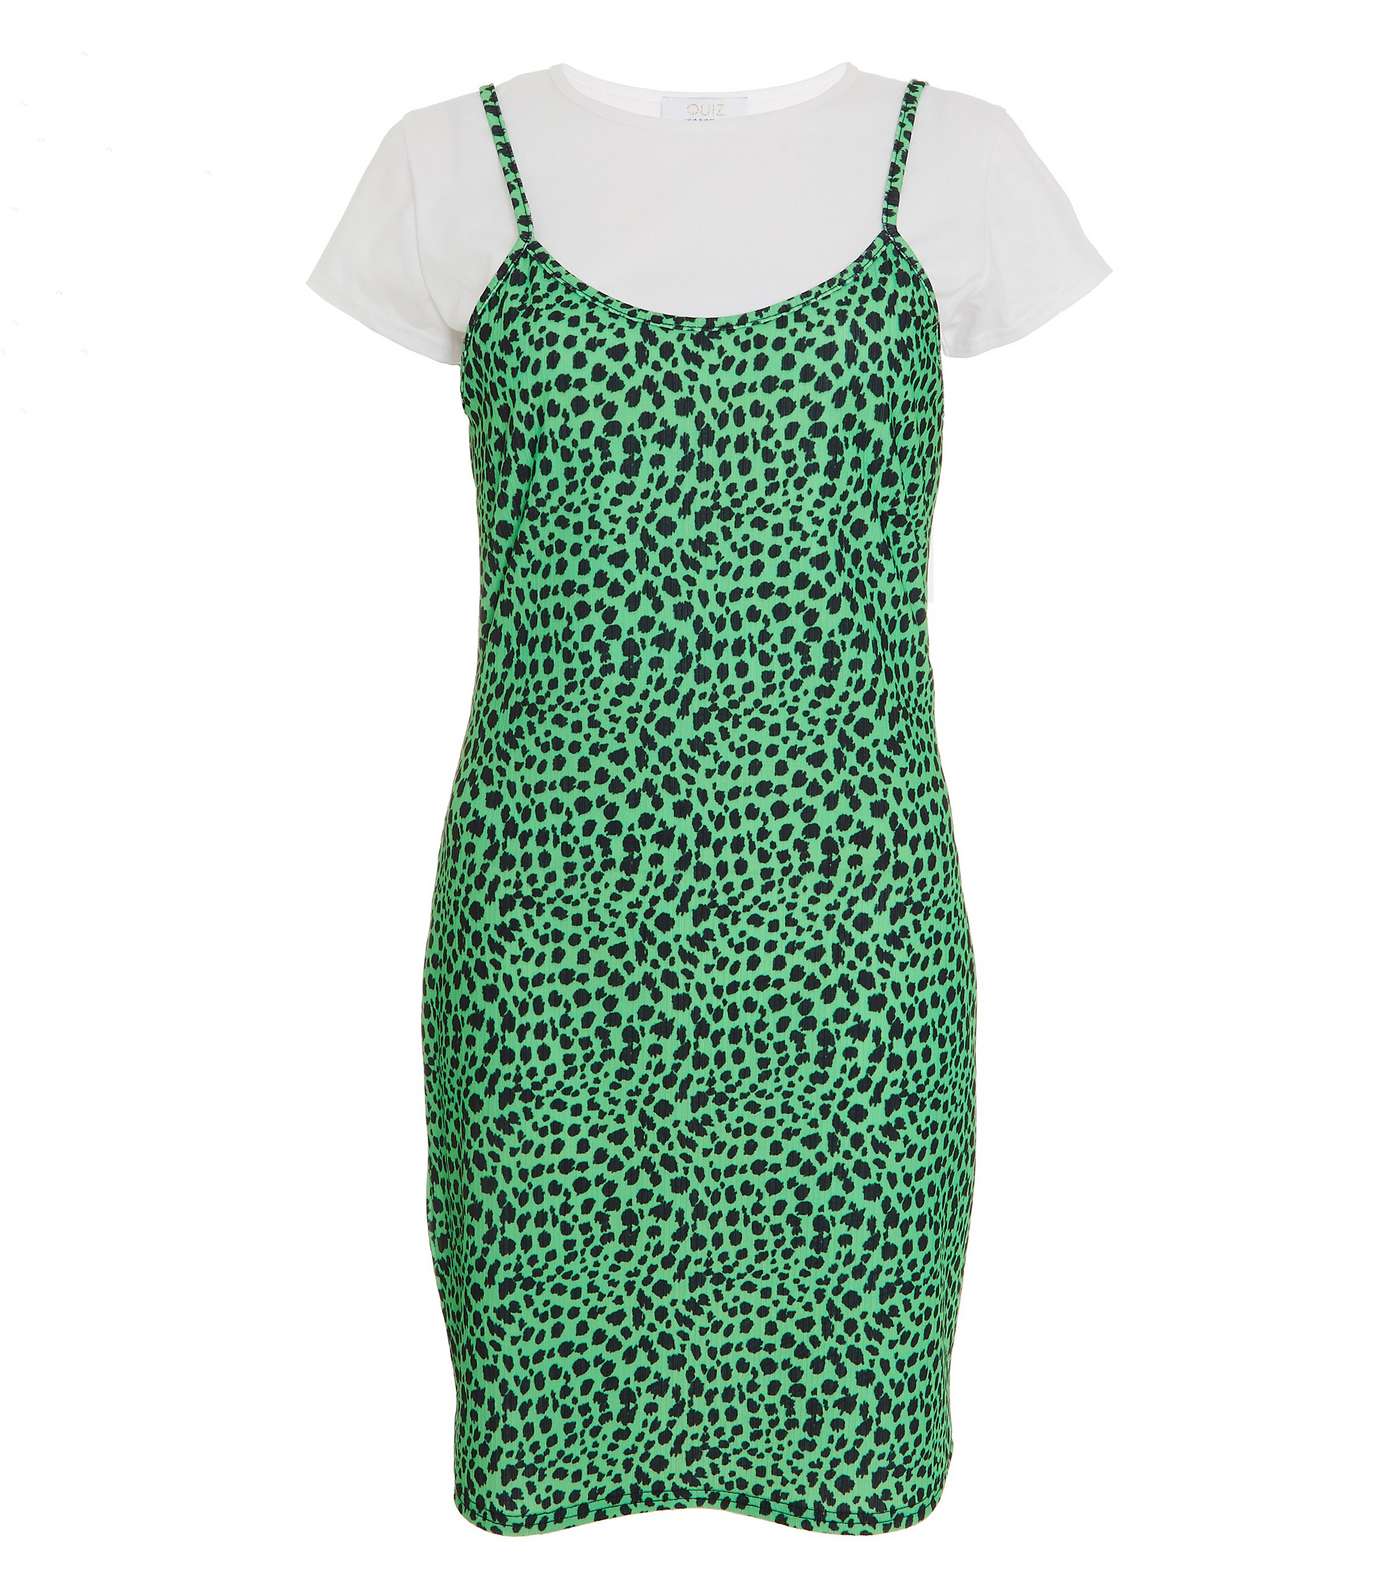 QUIZ Light Green Leopard Print 2-in-1 Mini T-Shirt Dress Image 4